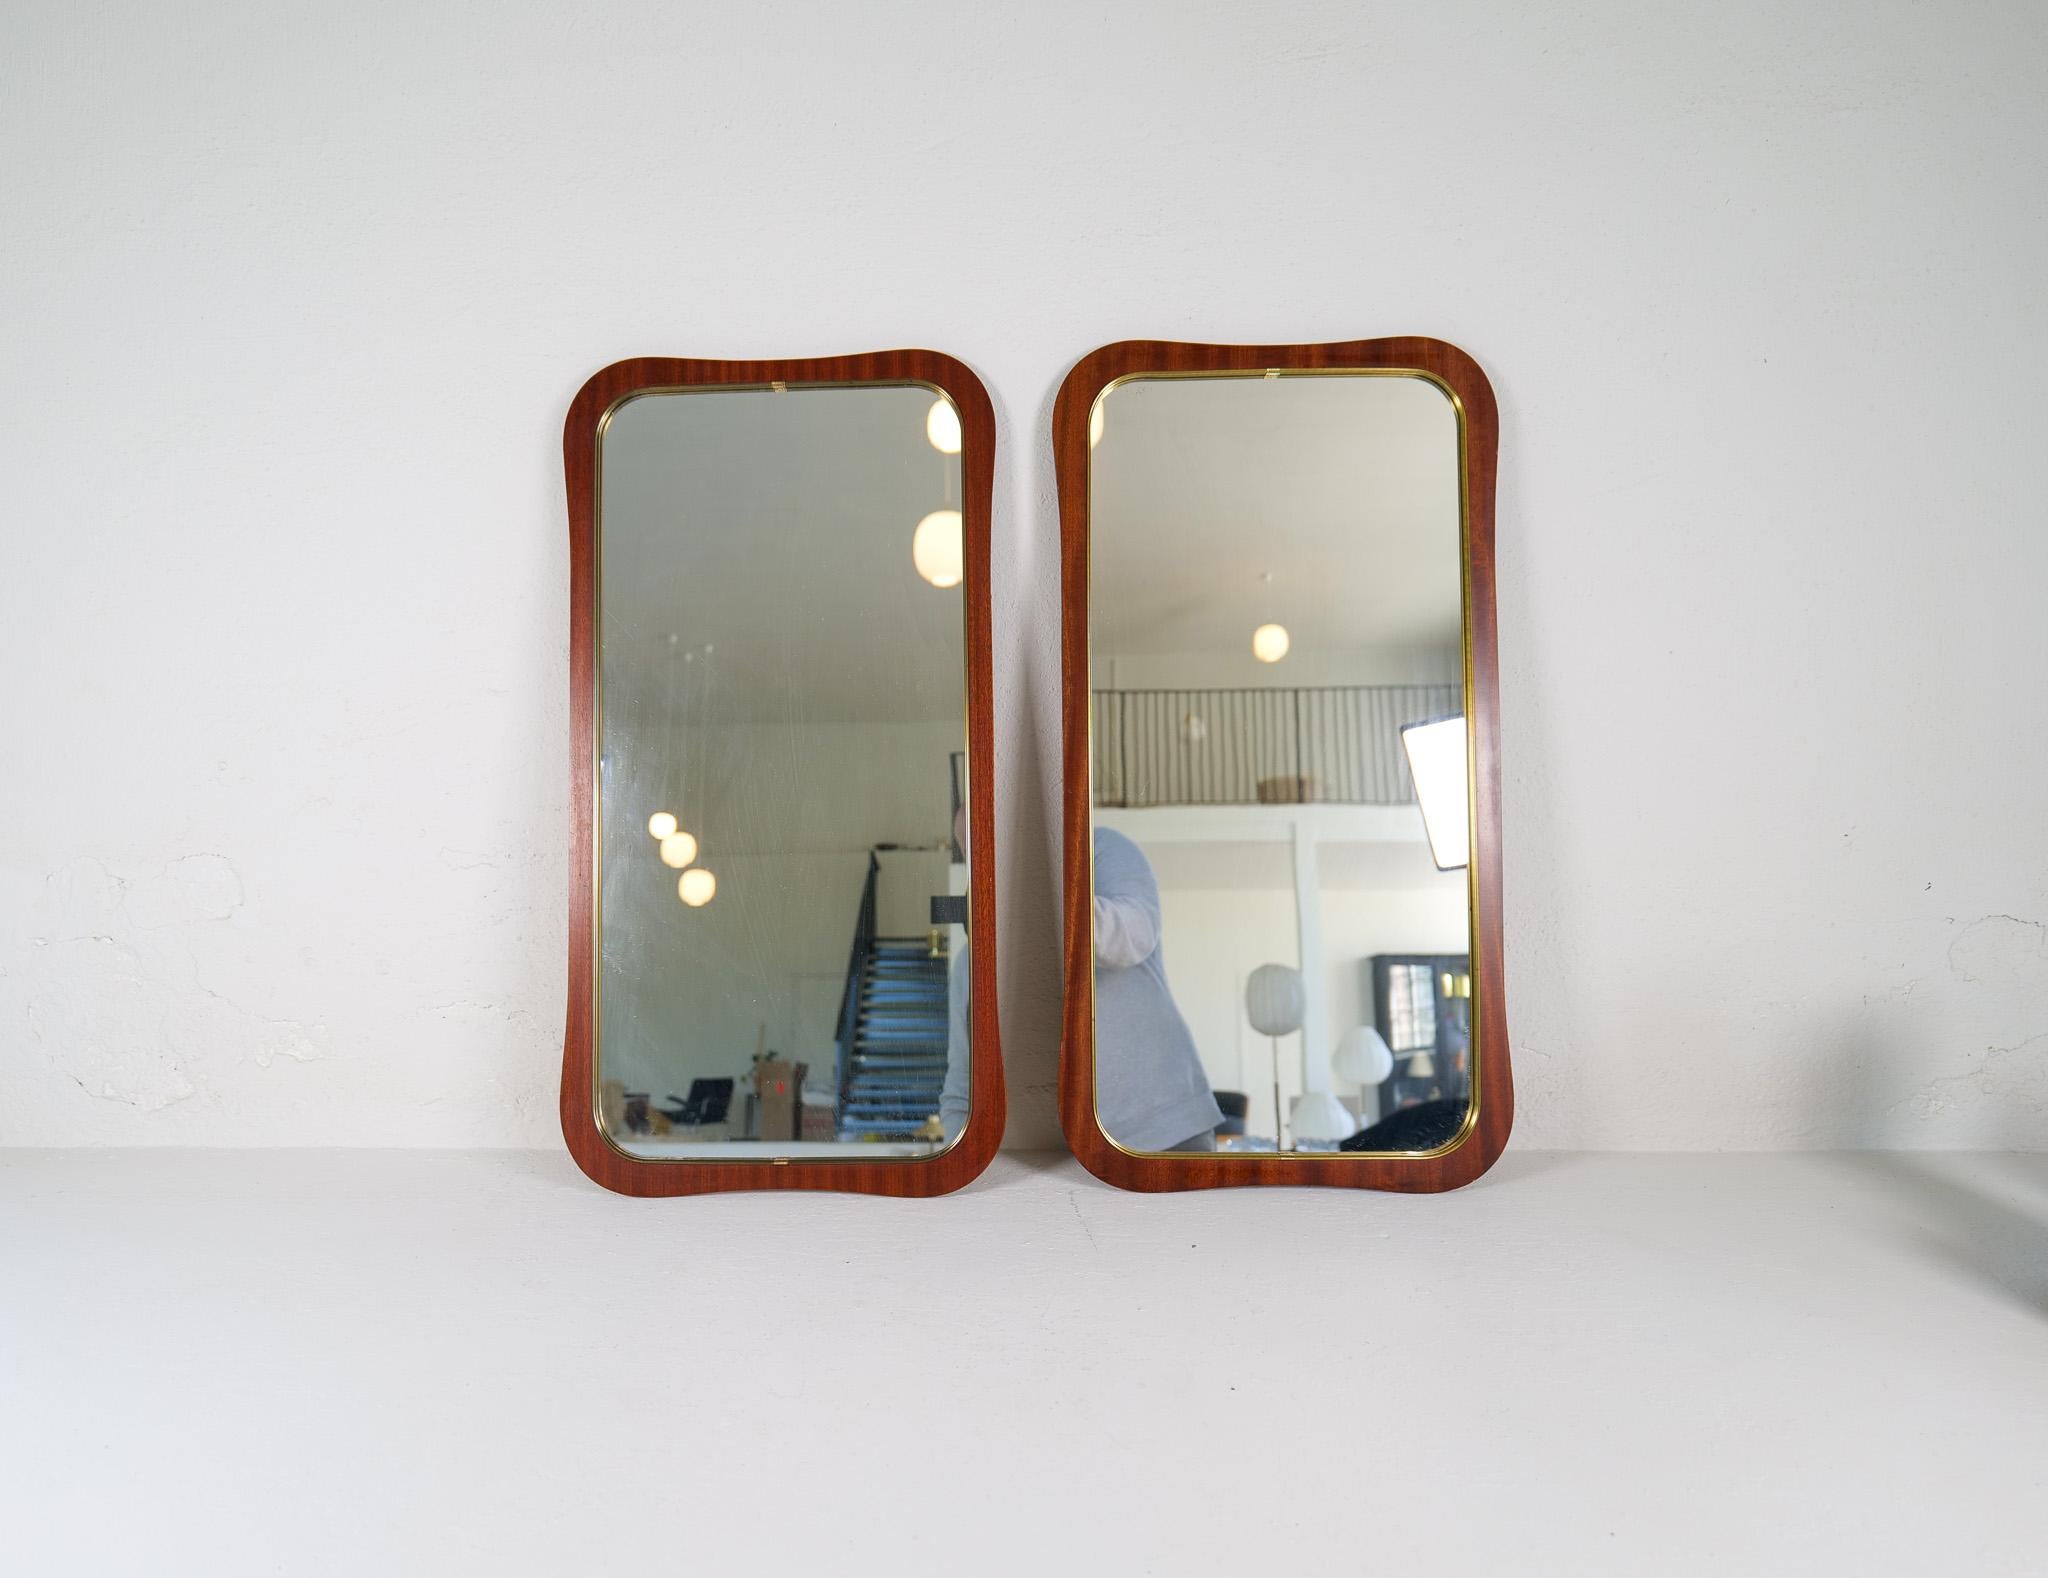 Dieses Paar skulpturaler Spiegel wurde in den späten 1950er Jahren in Schweden hergestellt. Geschenkt mit dem eleganten Swedish Grace Design, hergestellt aus Mahagonifurnier mit Messingrahmen. 

Guter Vintage-Zustand, kleine Flecken auf dem Holz und